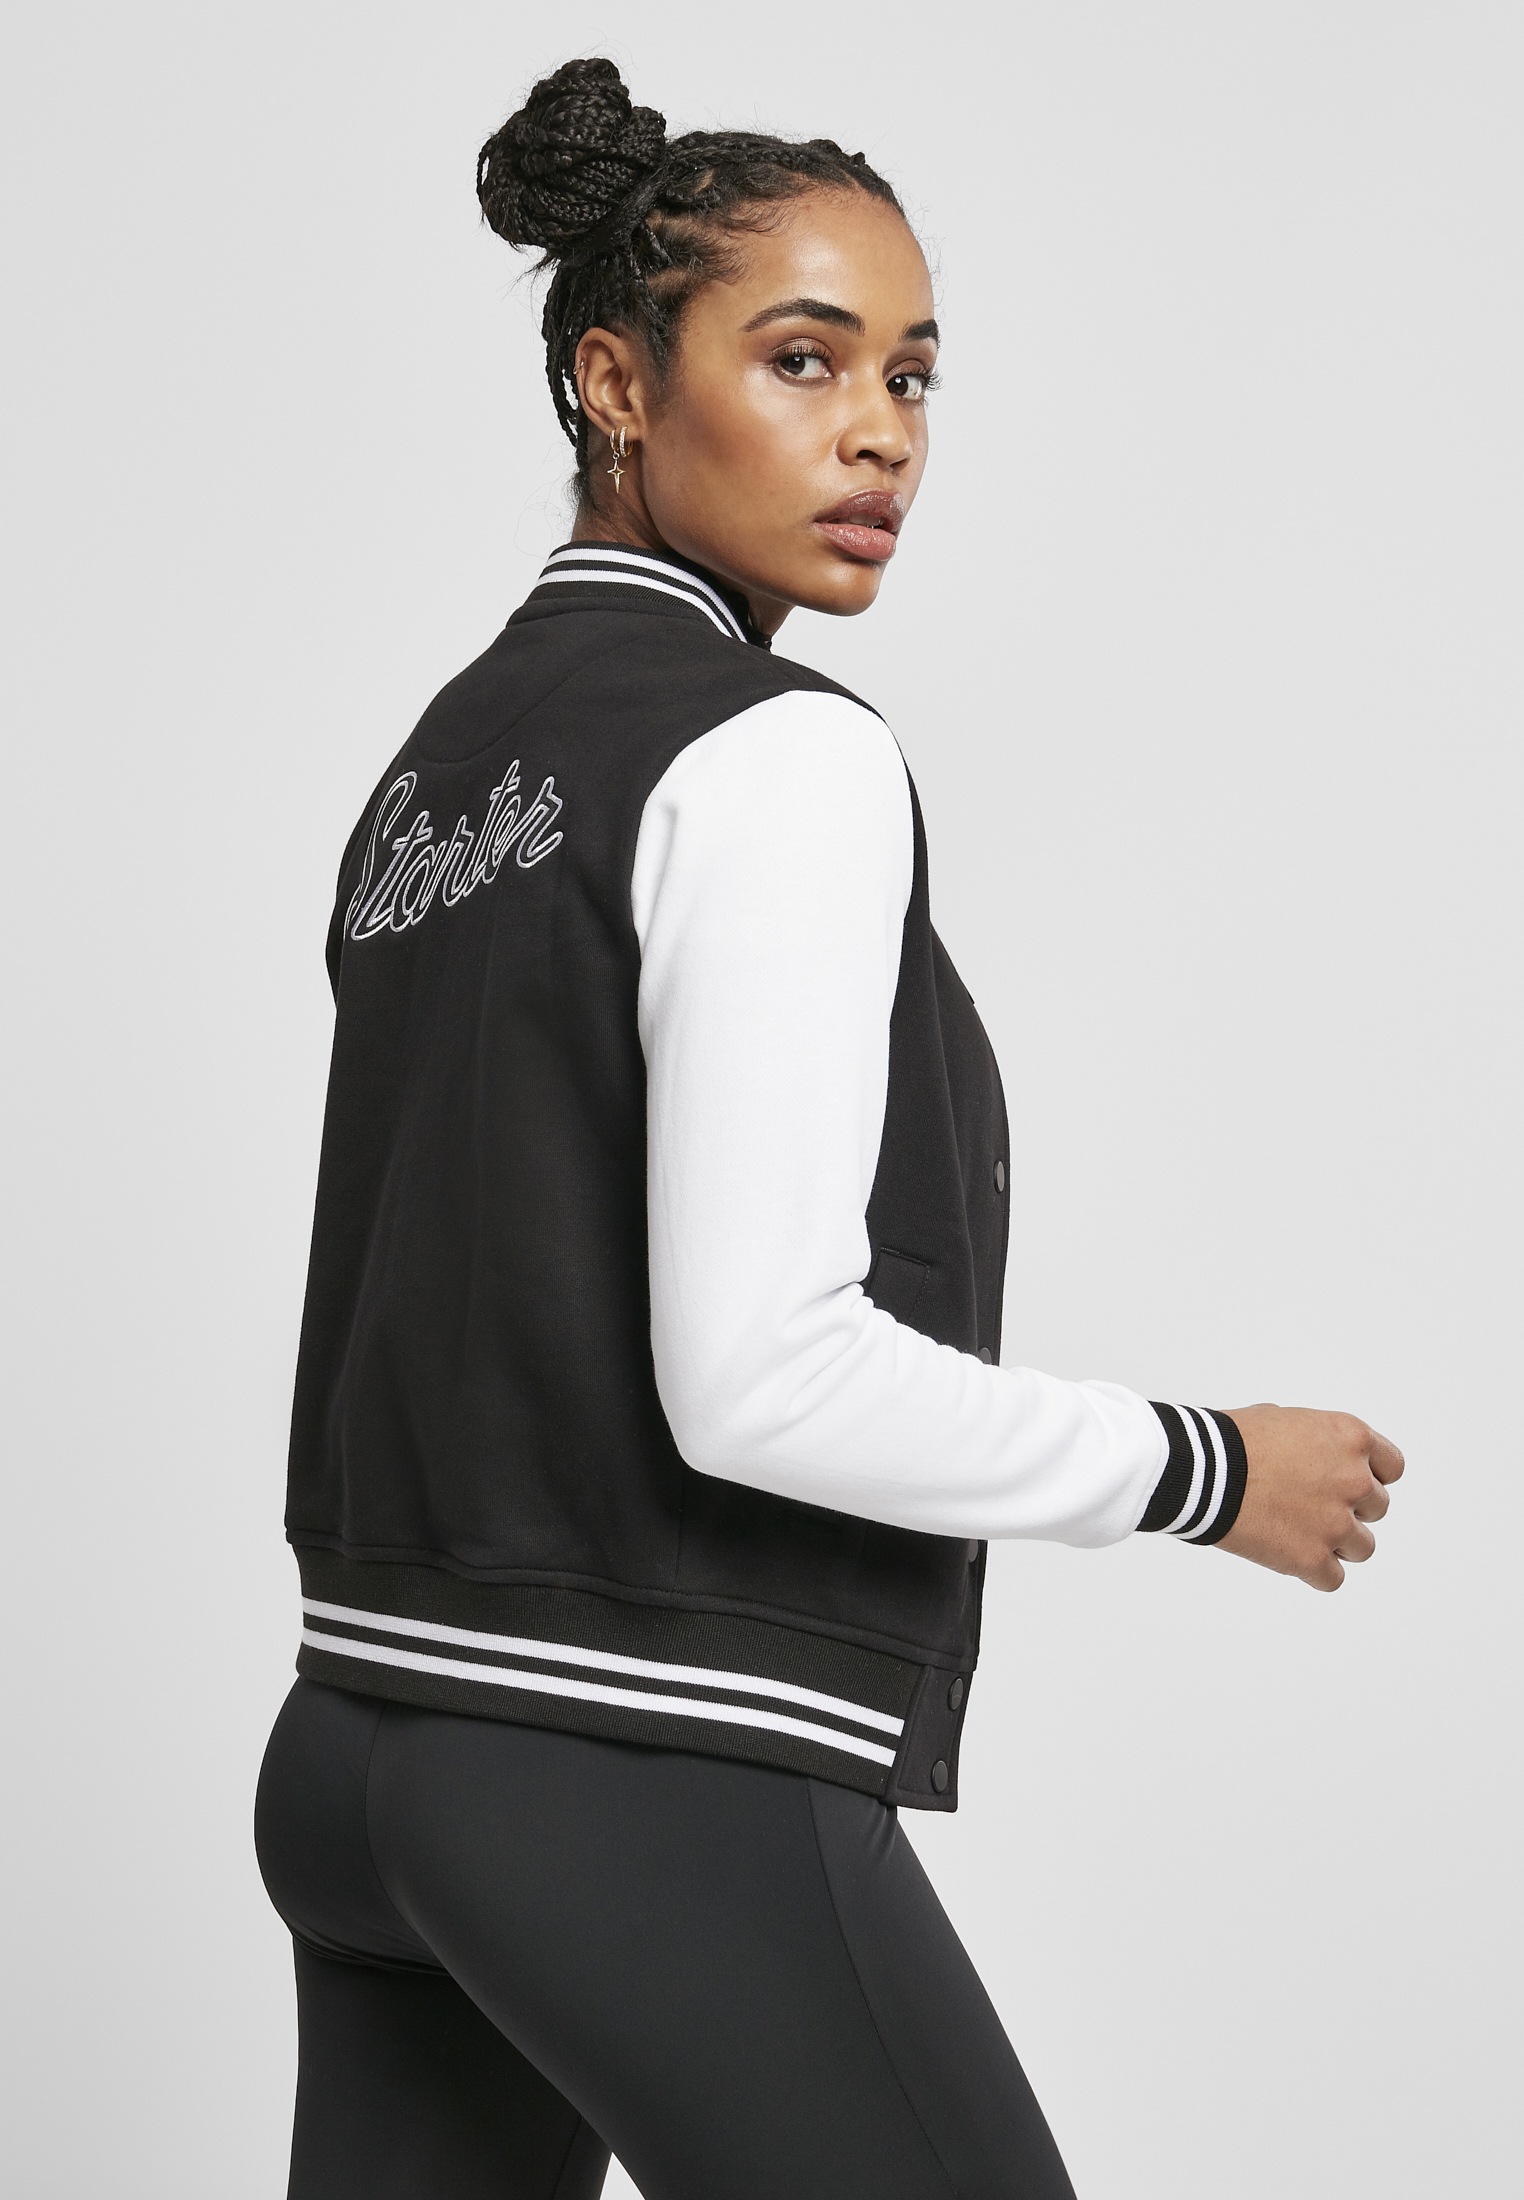 Starter Black Label Collegejacke »Damen Ladies Starter Sweat College Jacket«,  (1 St.), ohne Kapuze kaufen | BAUR